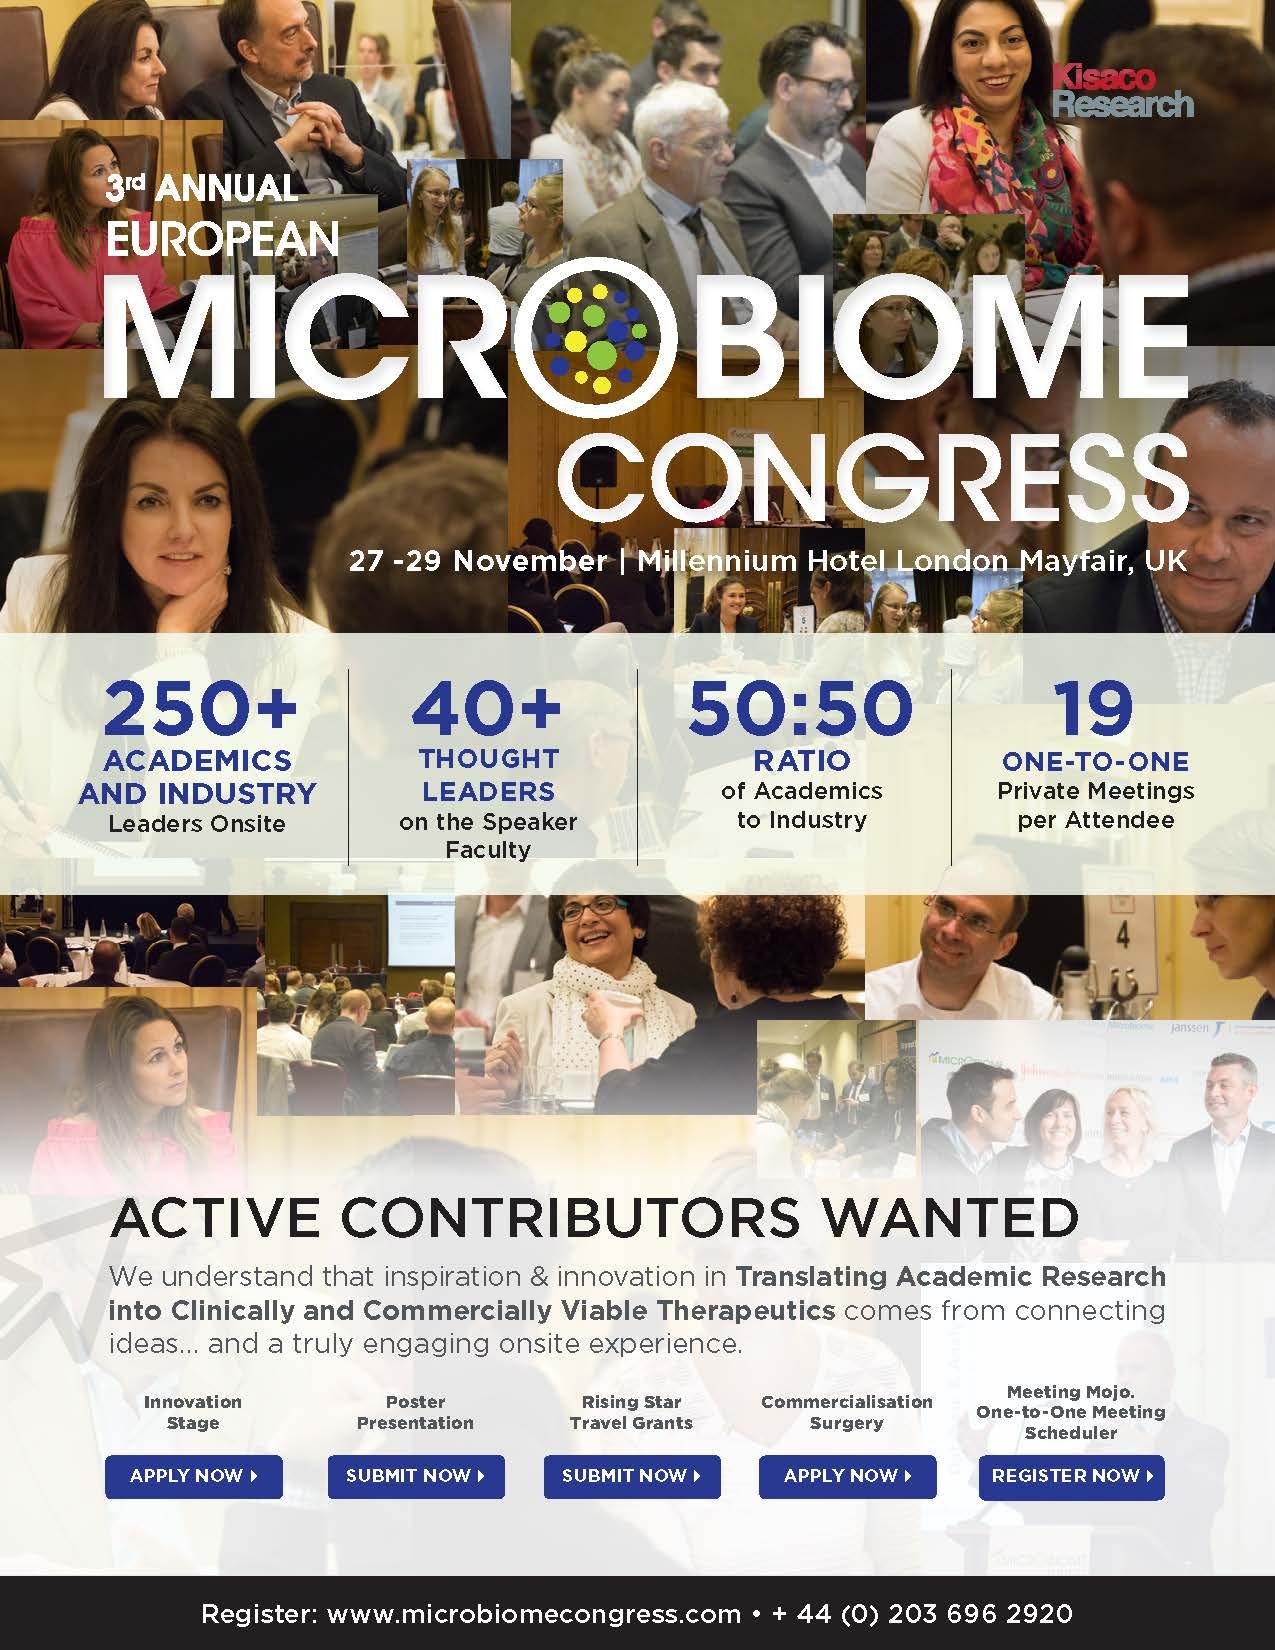 European Microbiome Congress agenda